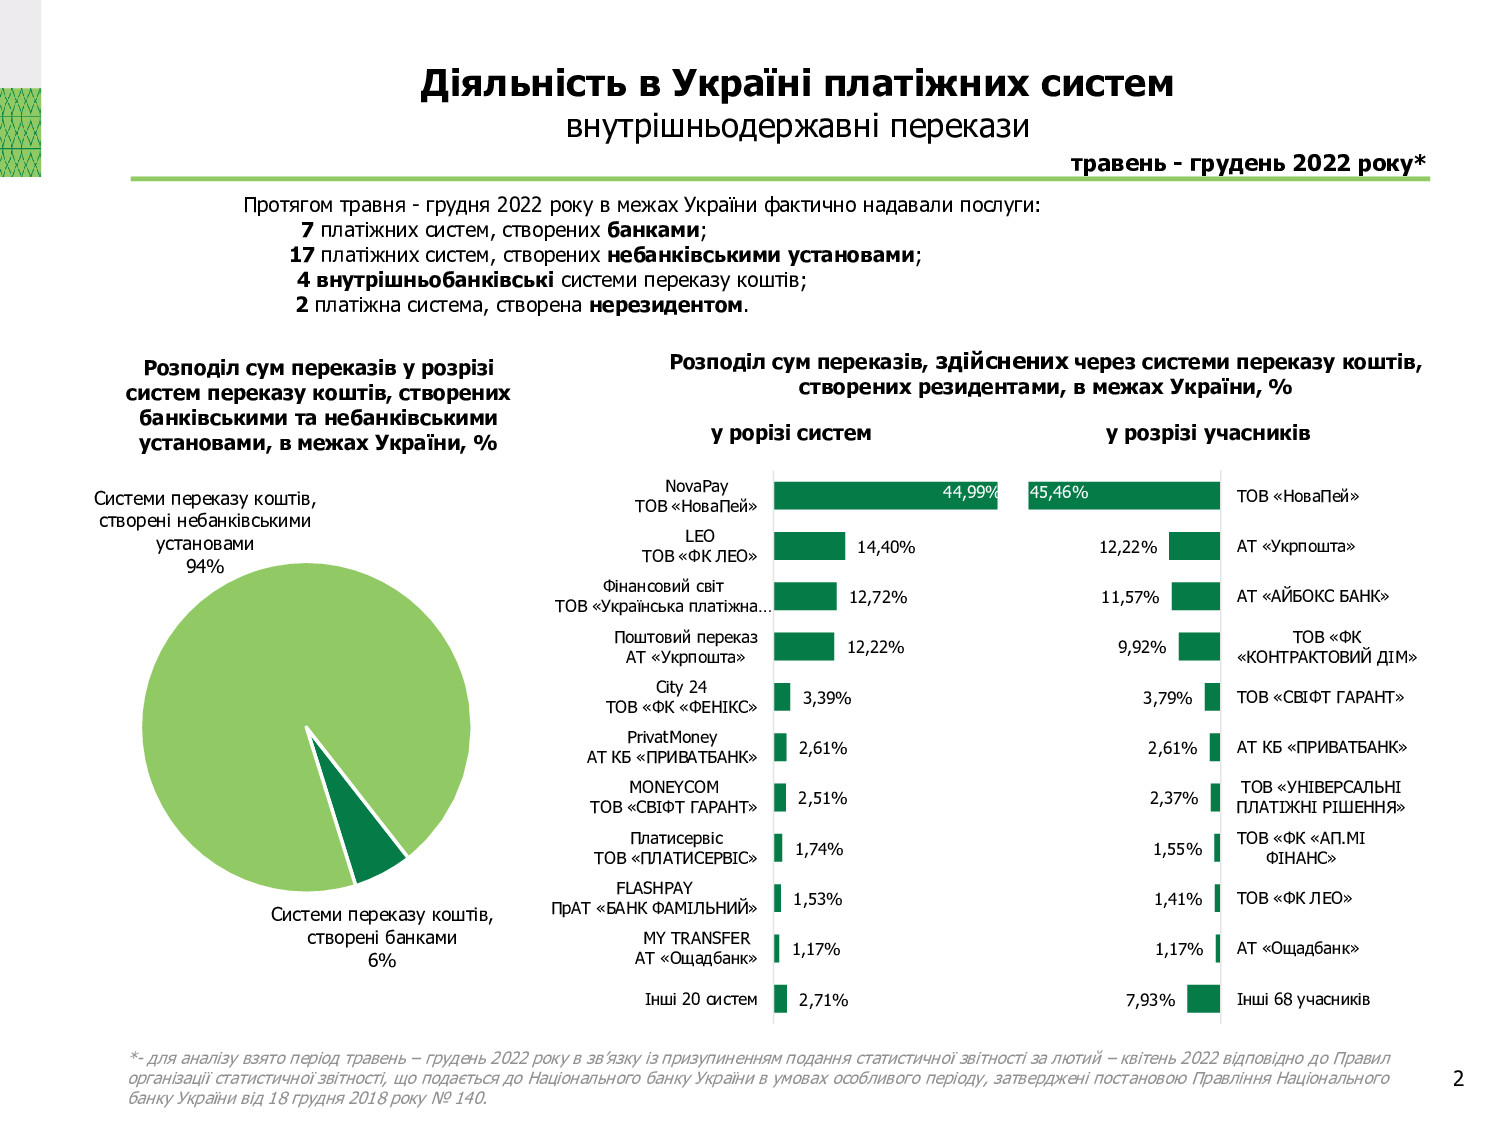 Діяльність в Україні платіжних систем, травень-грудень 2022 року (2)